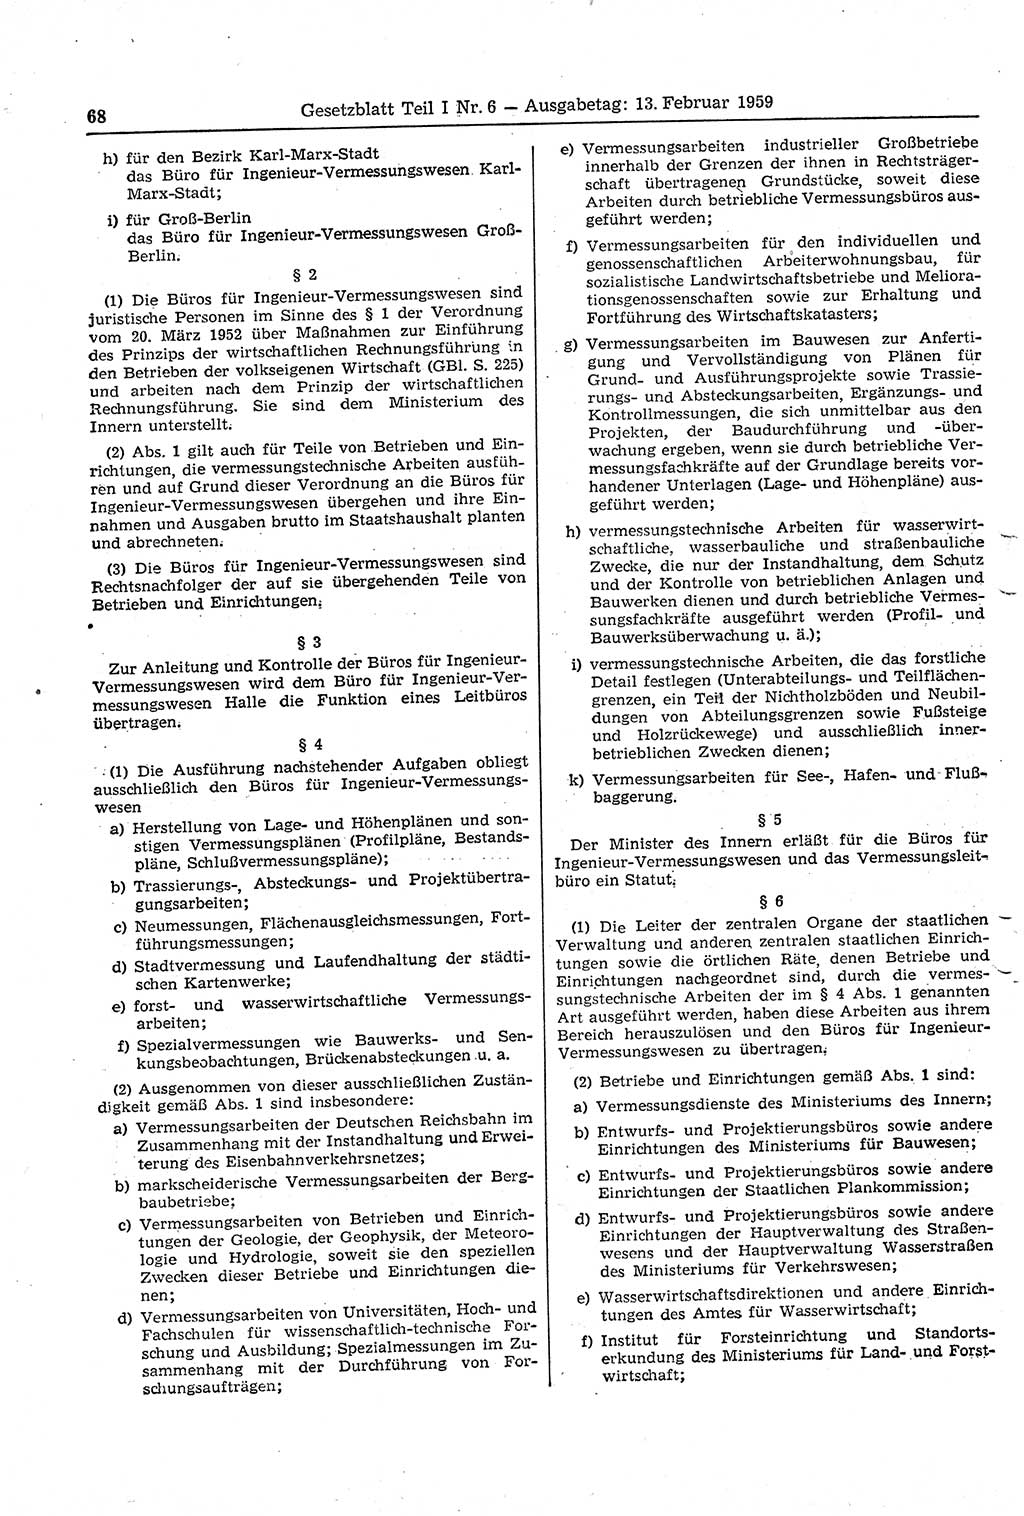 Gesetzblatt (GBl.) der Deutschen Demokratischen Republik (DDR) Teil Ⅰ 1959, Seite 68 (GBl. DDR Ⅰ 1959, S. 68)